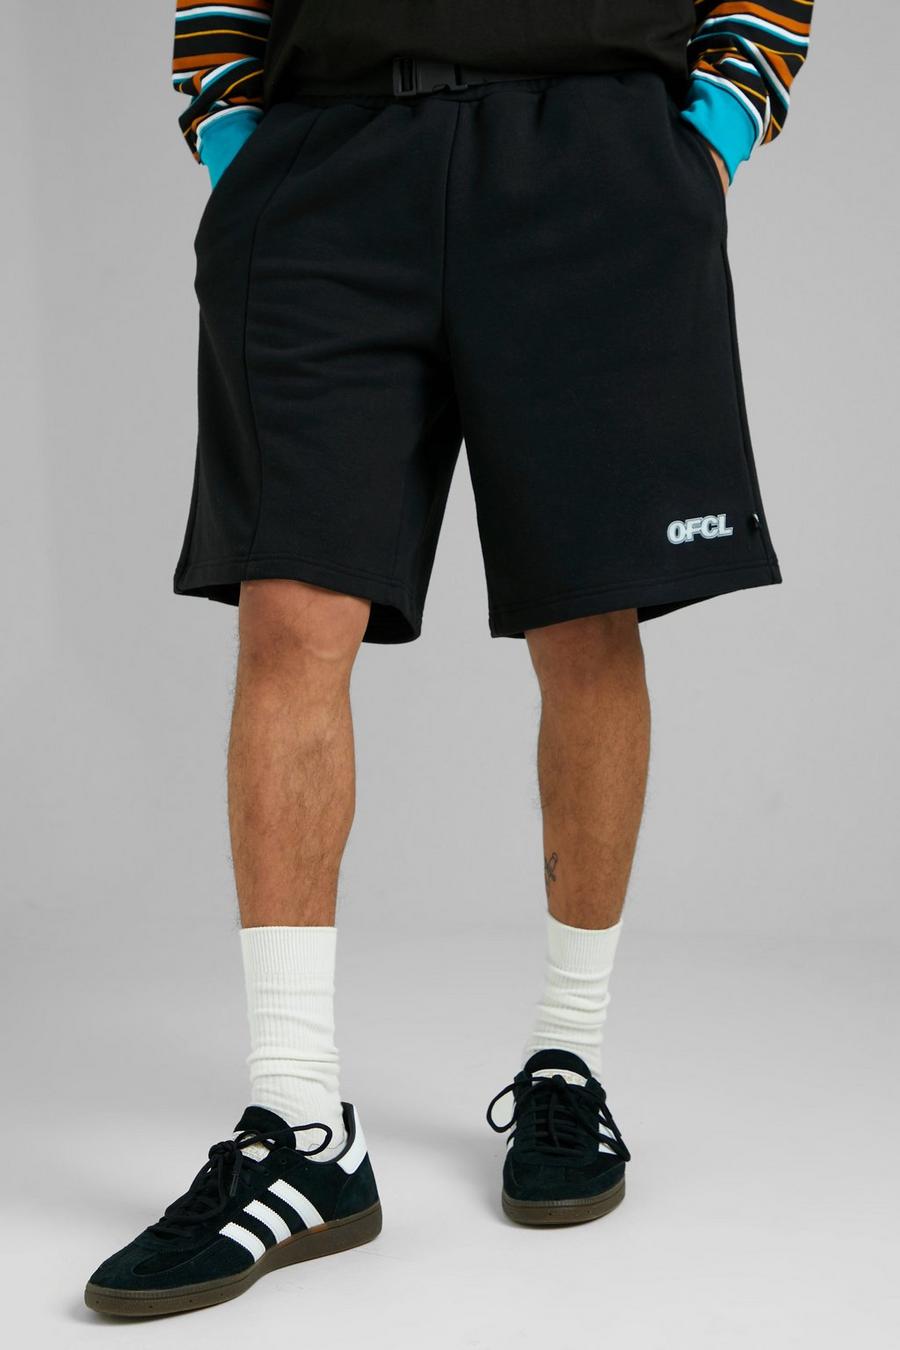 Black noir Ofcl Jersey Basketbal Shorts